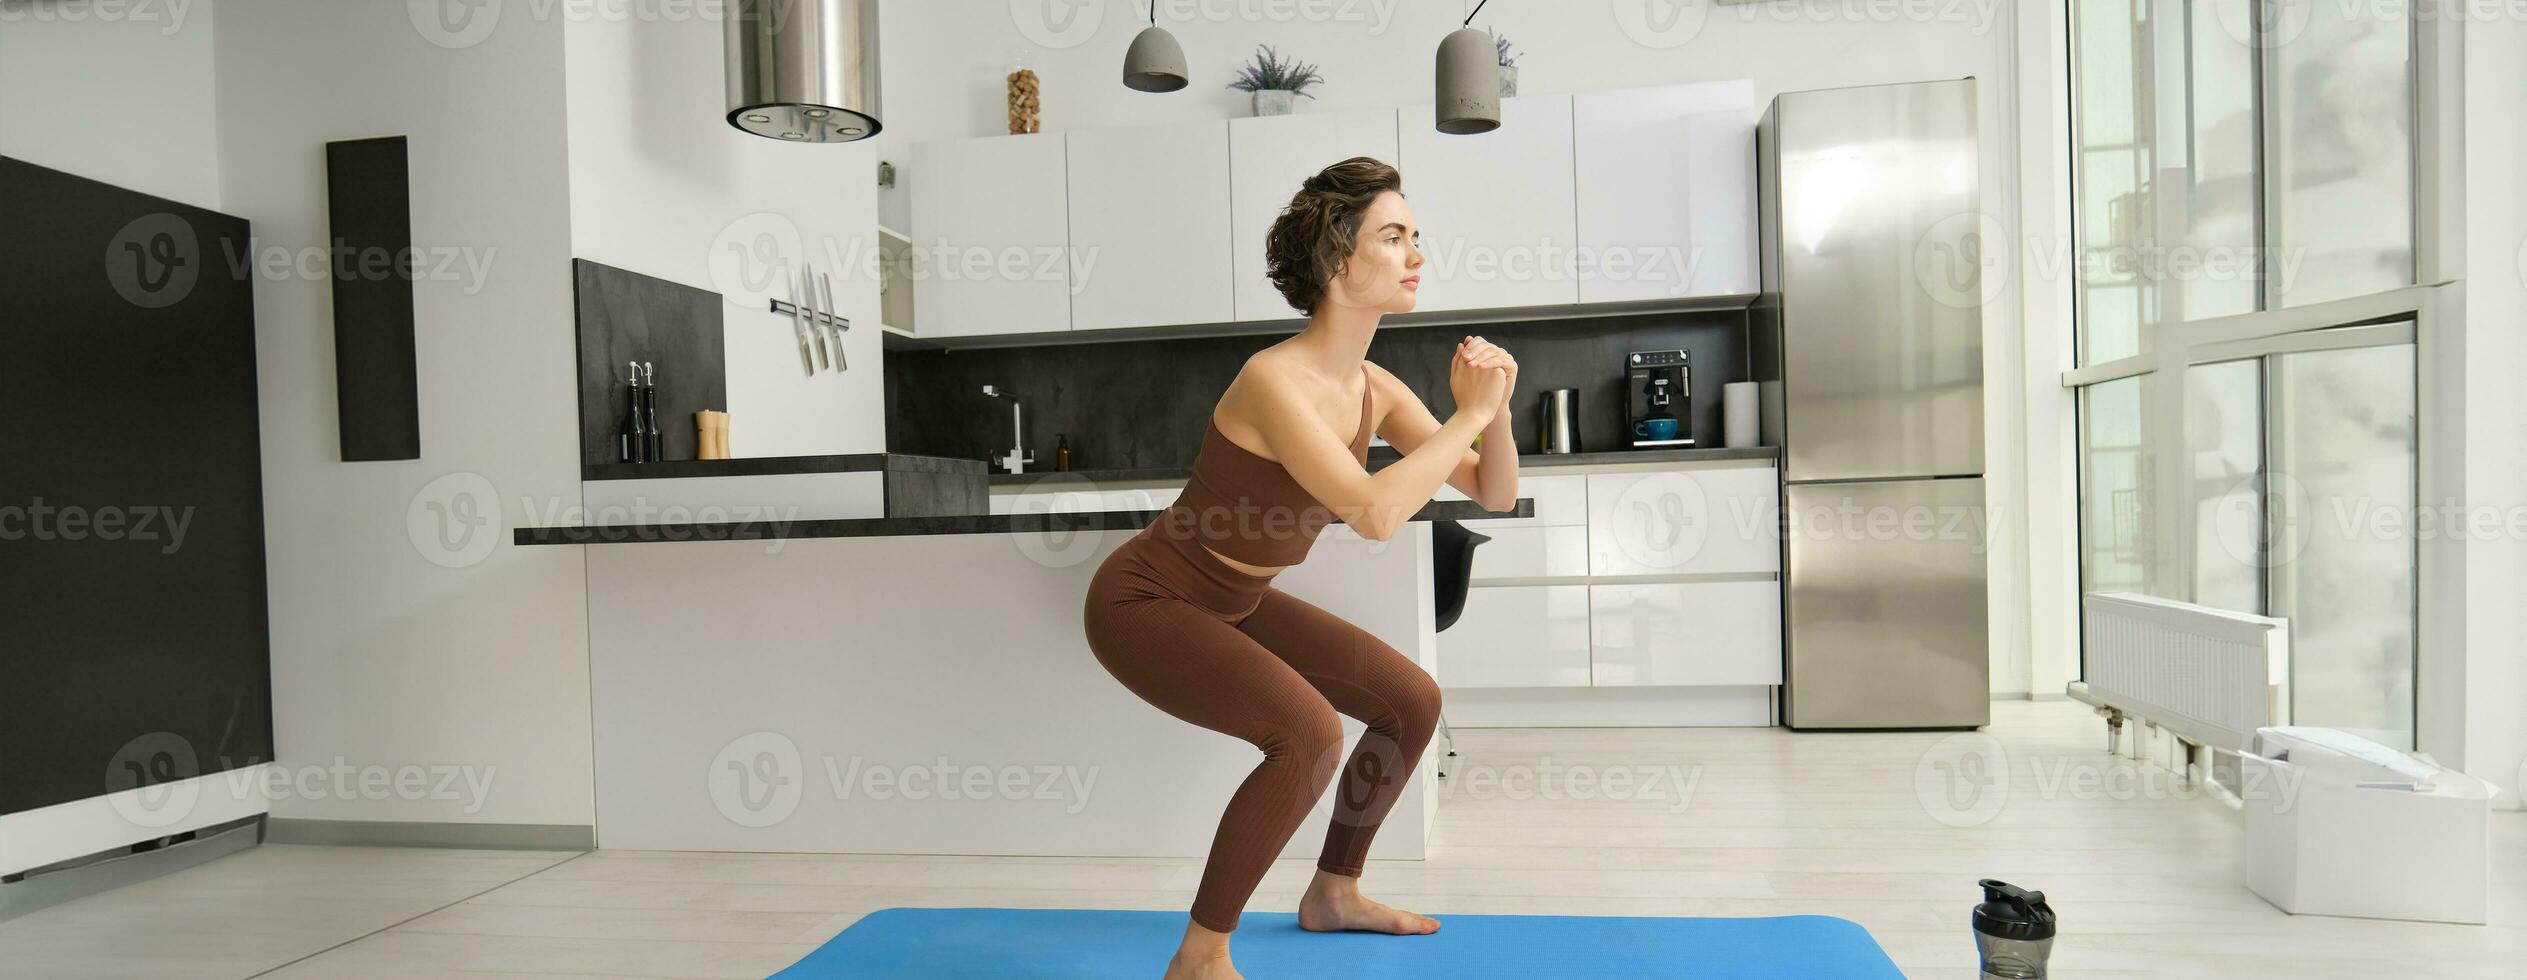 gimnasio a hogar. joven mujer haciendo sentadillas en brillante habitación, rutina de ejercicio adentro en ropa de deporte, haciendo ejercicios en caucho yoga estera foto